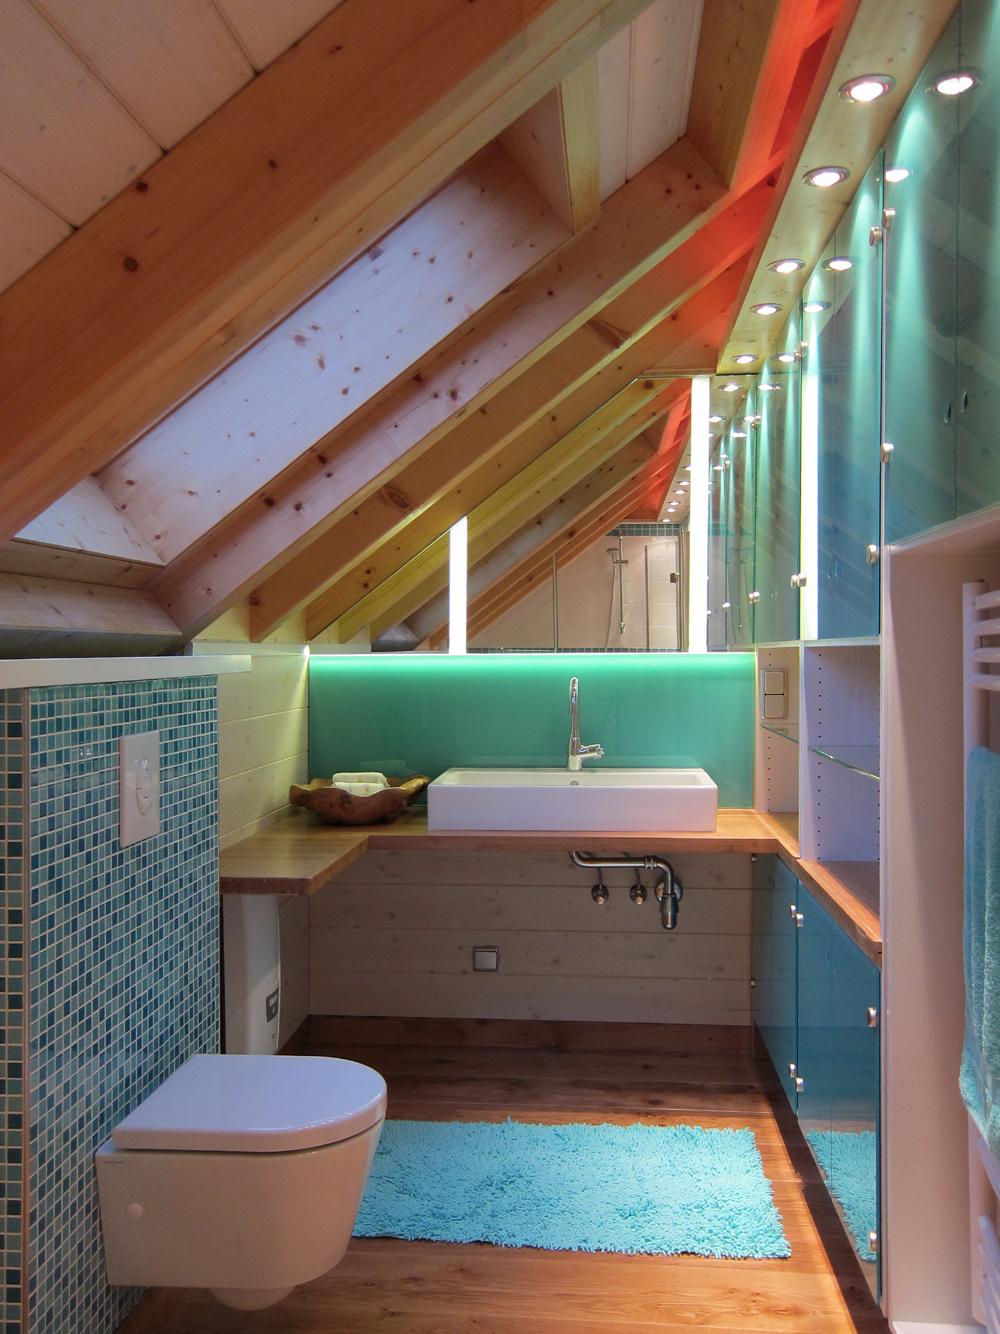 Bad in der Dachschräge #dachschräge #badezimmerspiegel #waschtisch #badezimmerschrank ©Birgit Hansen